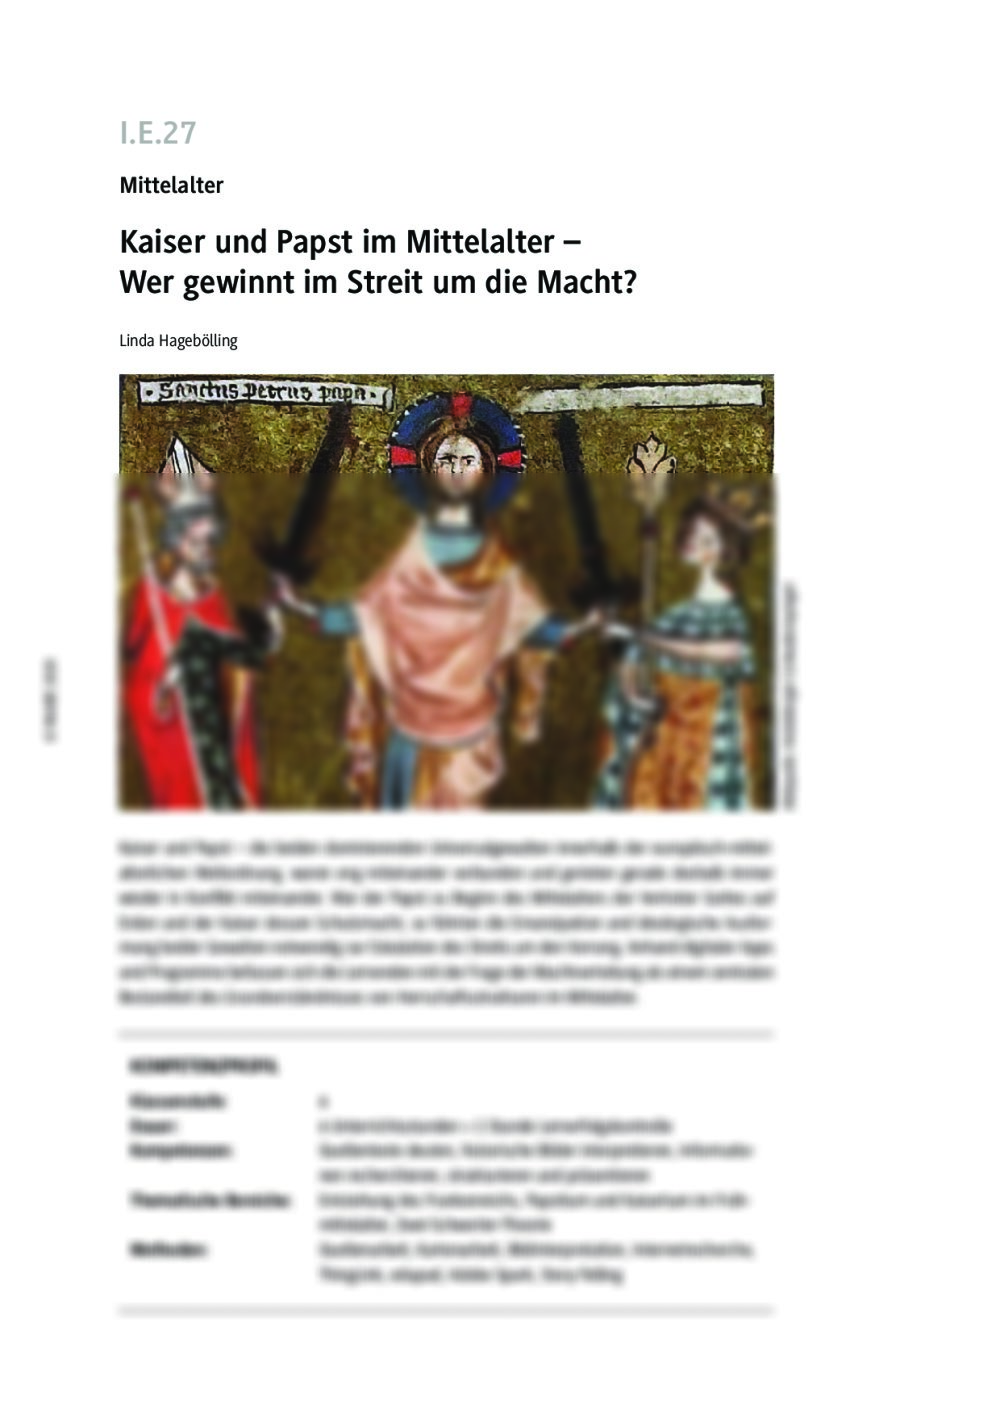 Kaiser und Papst im Mittelalter - Seite 1